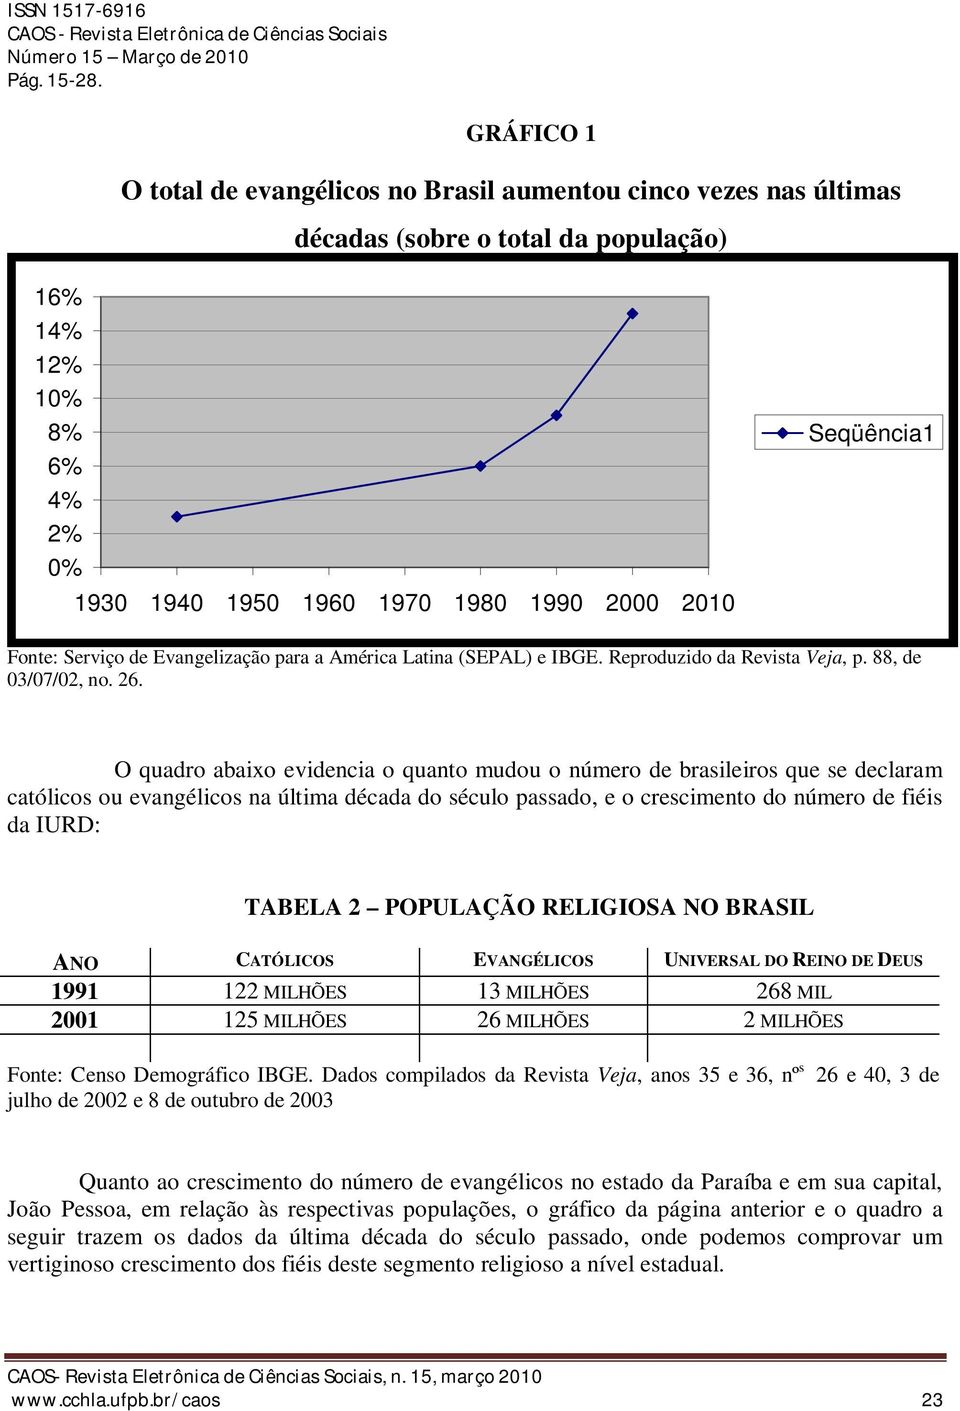 O quadro abaixo evidencia o quanto mudou o número de brasileiros que se declaram católicos ou evangélicos na última década do século passado, e o crescimento do número de fiéis da IURD: TABELA 2